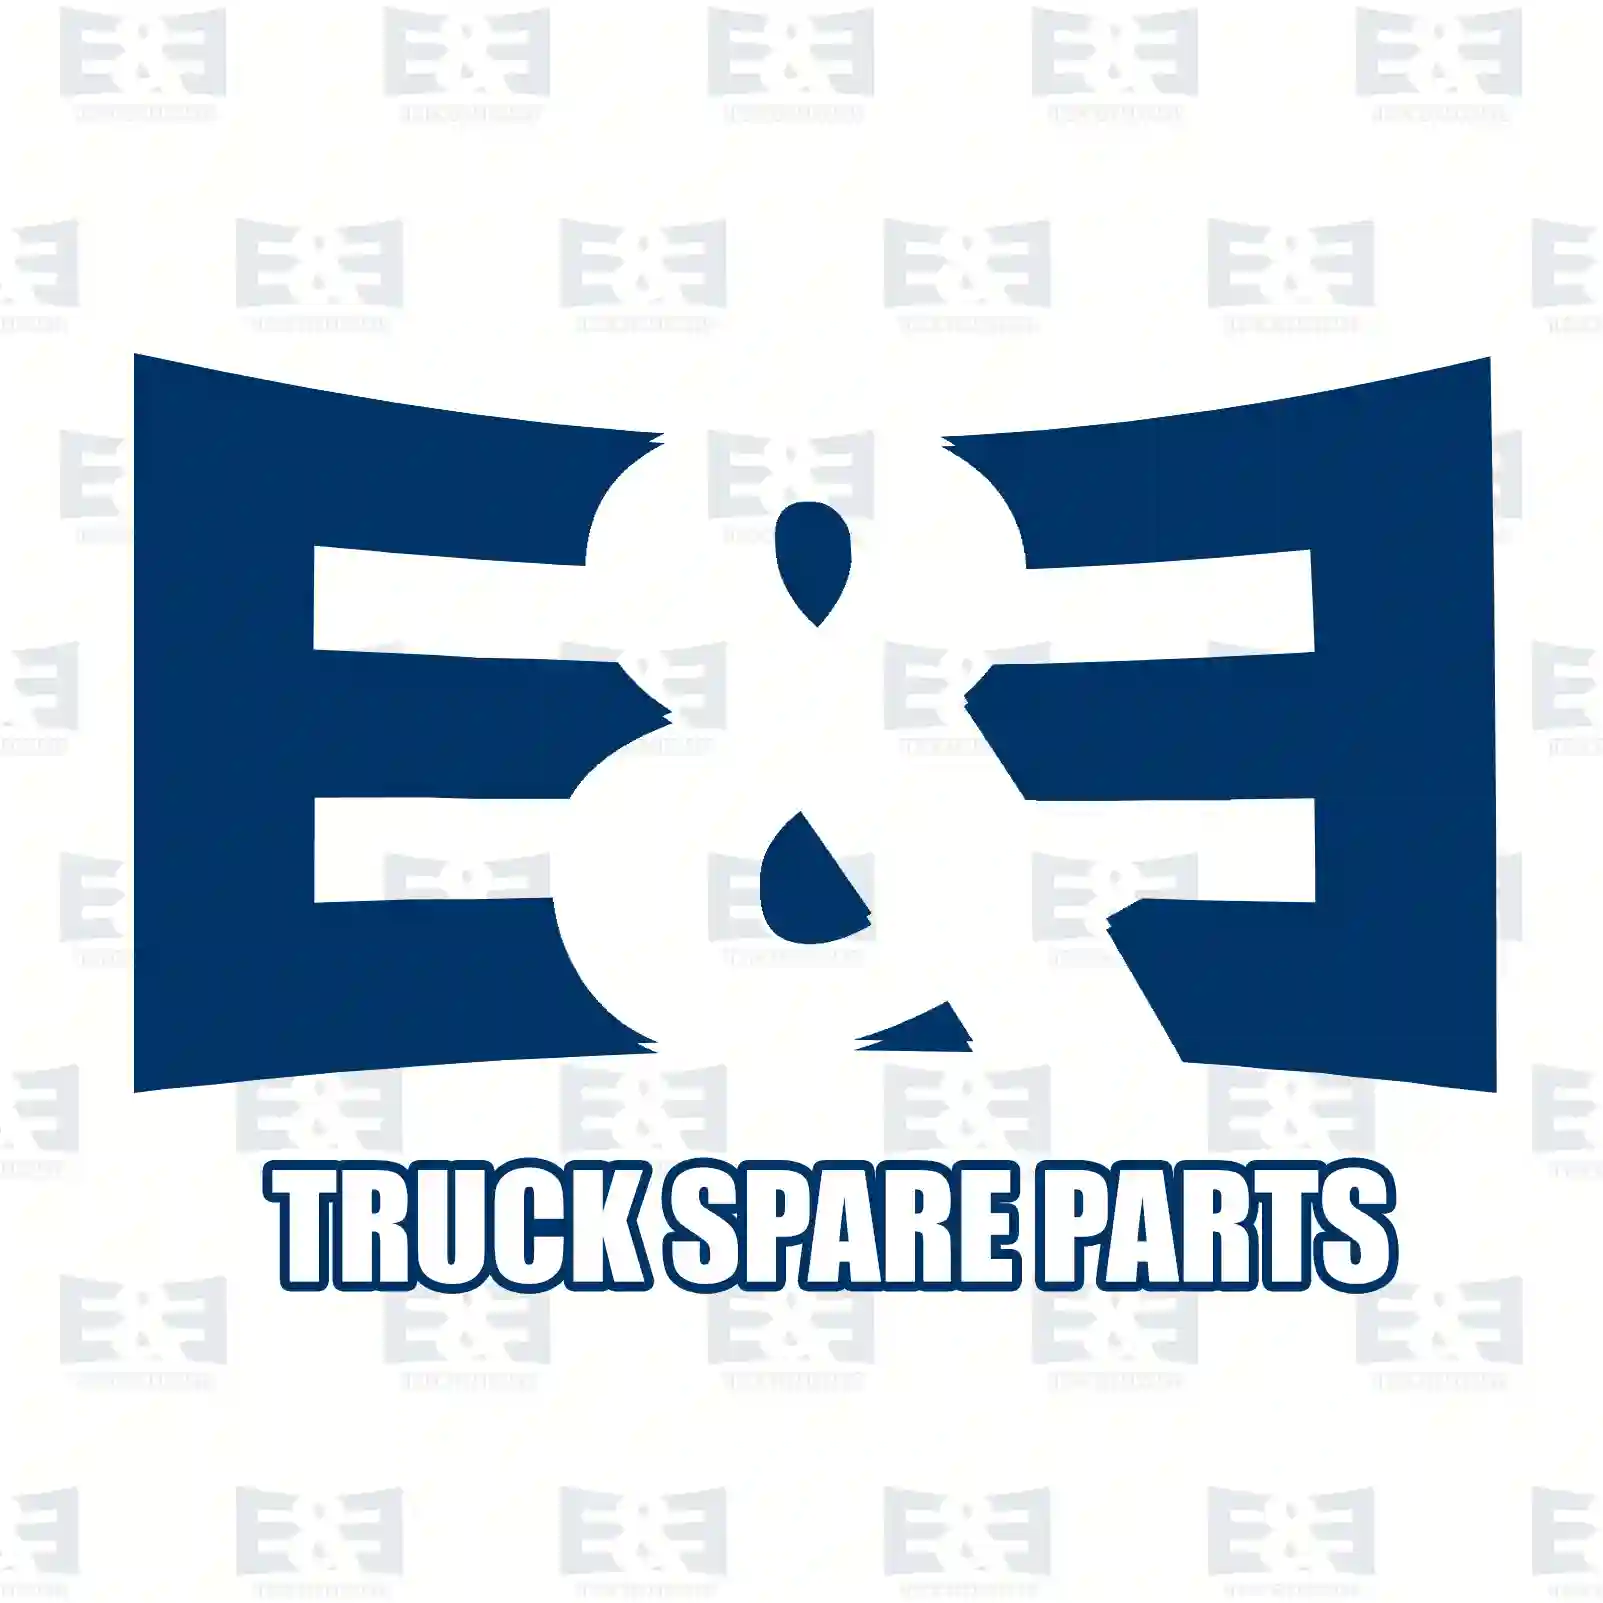 Overhaul kit, 2E2209396, 5001834579, 50018 ||  2E2209396 E&E Truck Spare Parts | Truck Spare Parts, Auotomotive Spare Parts Overhaul kit, 2E2209396, 5001834579, 50018 ||  2E2209396 E&E Truck Spare Parts | Truck Spare Parts, Auotomotive Spare Parts